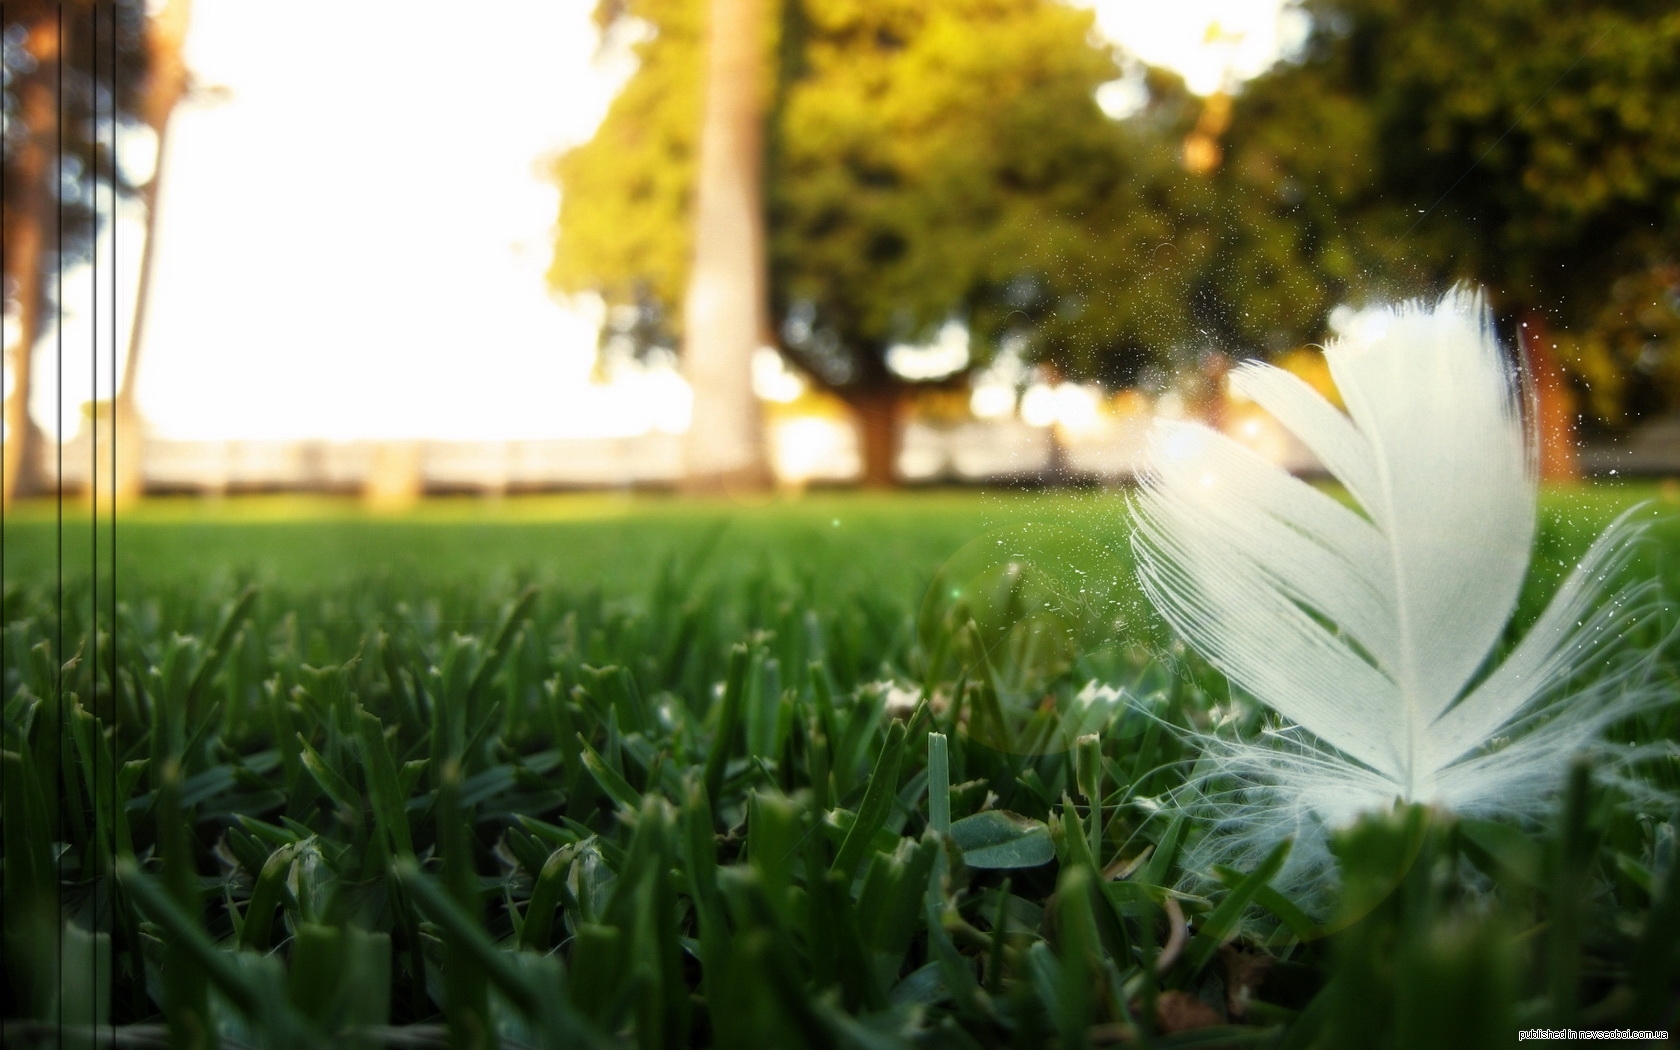 landscape, grass, art photo, feather 2160p